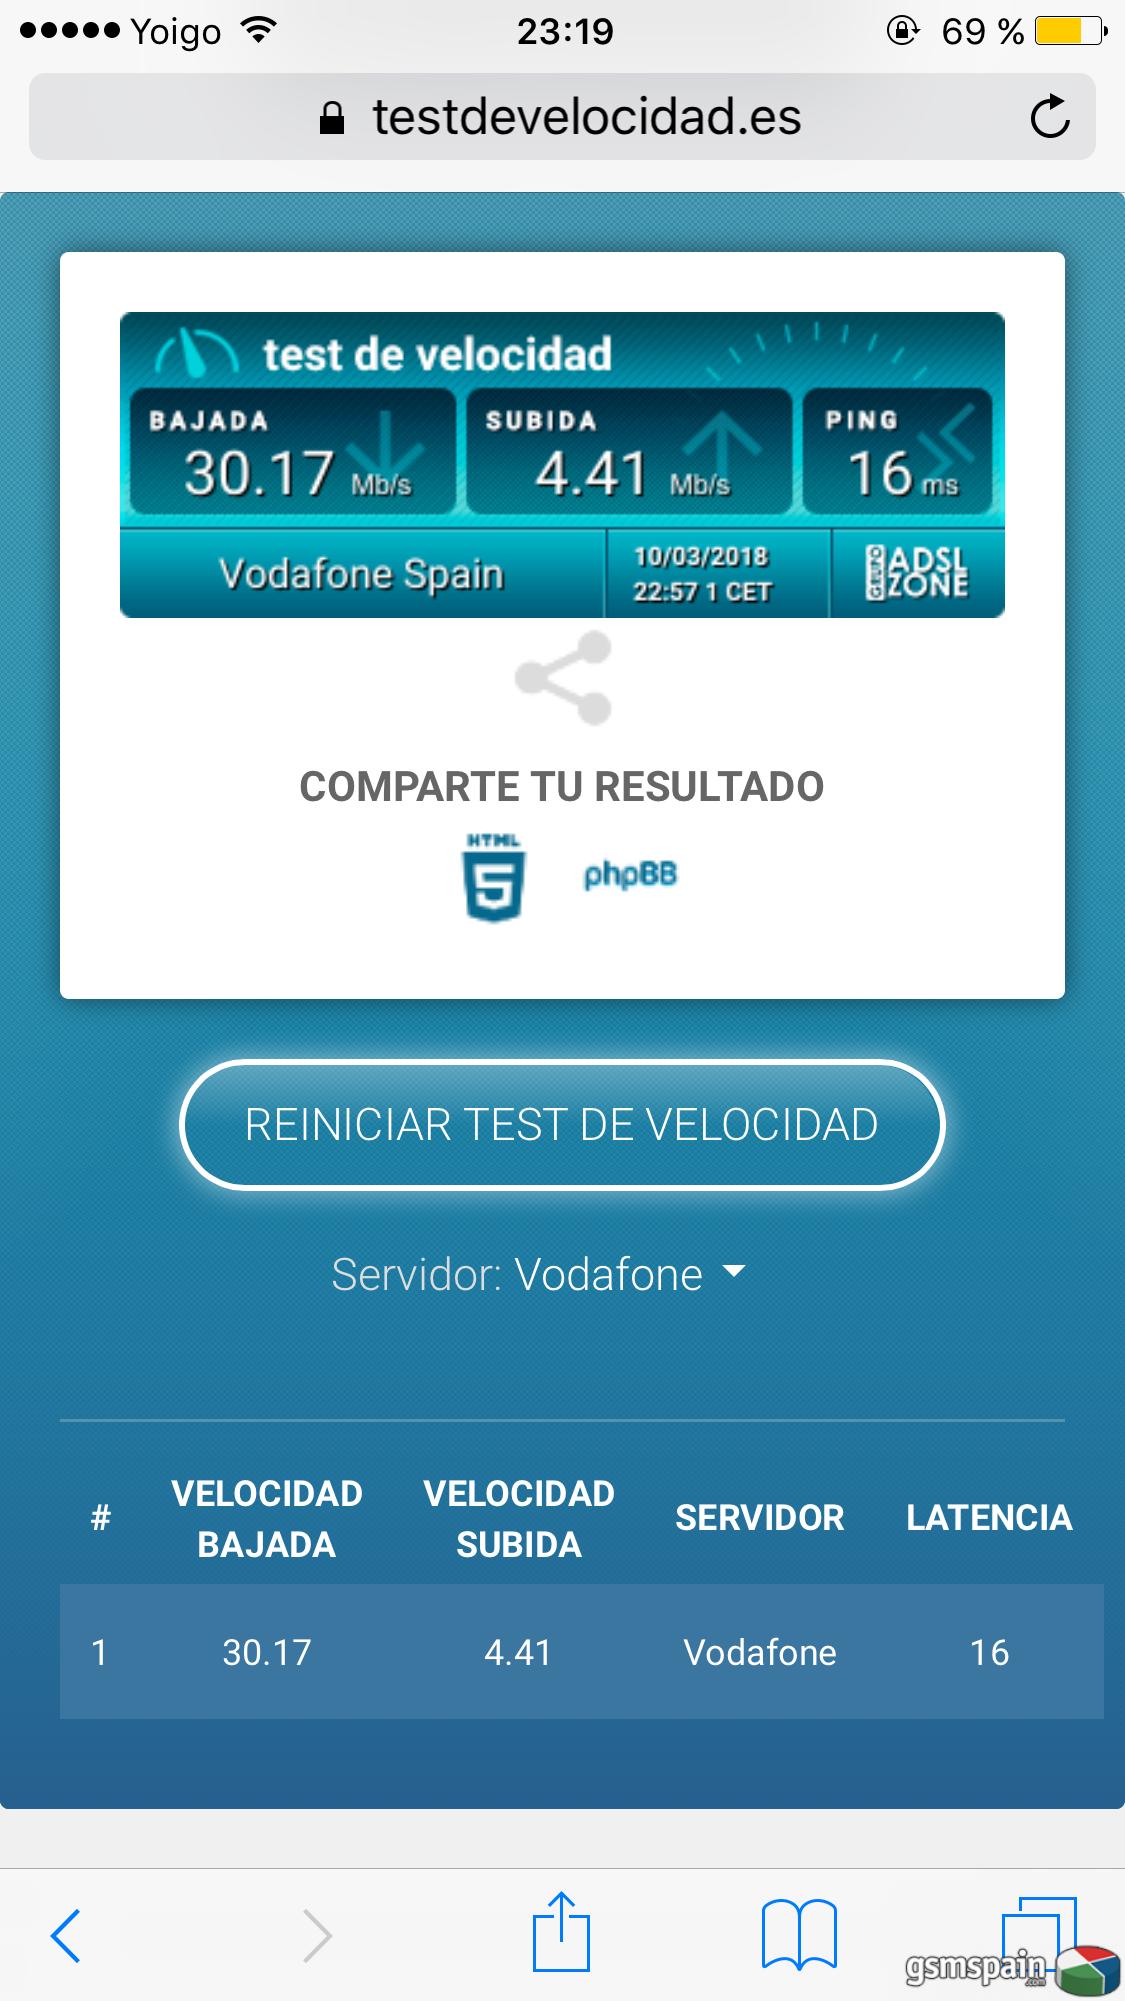 [AYUDA] Test de velocidad fibra 30mb Vodafone